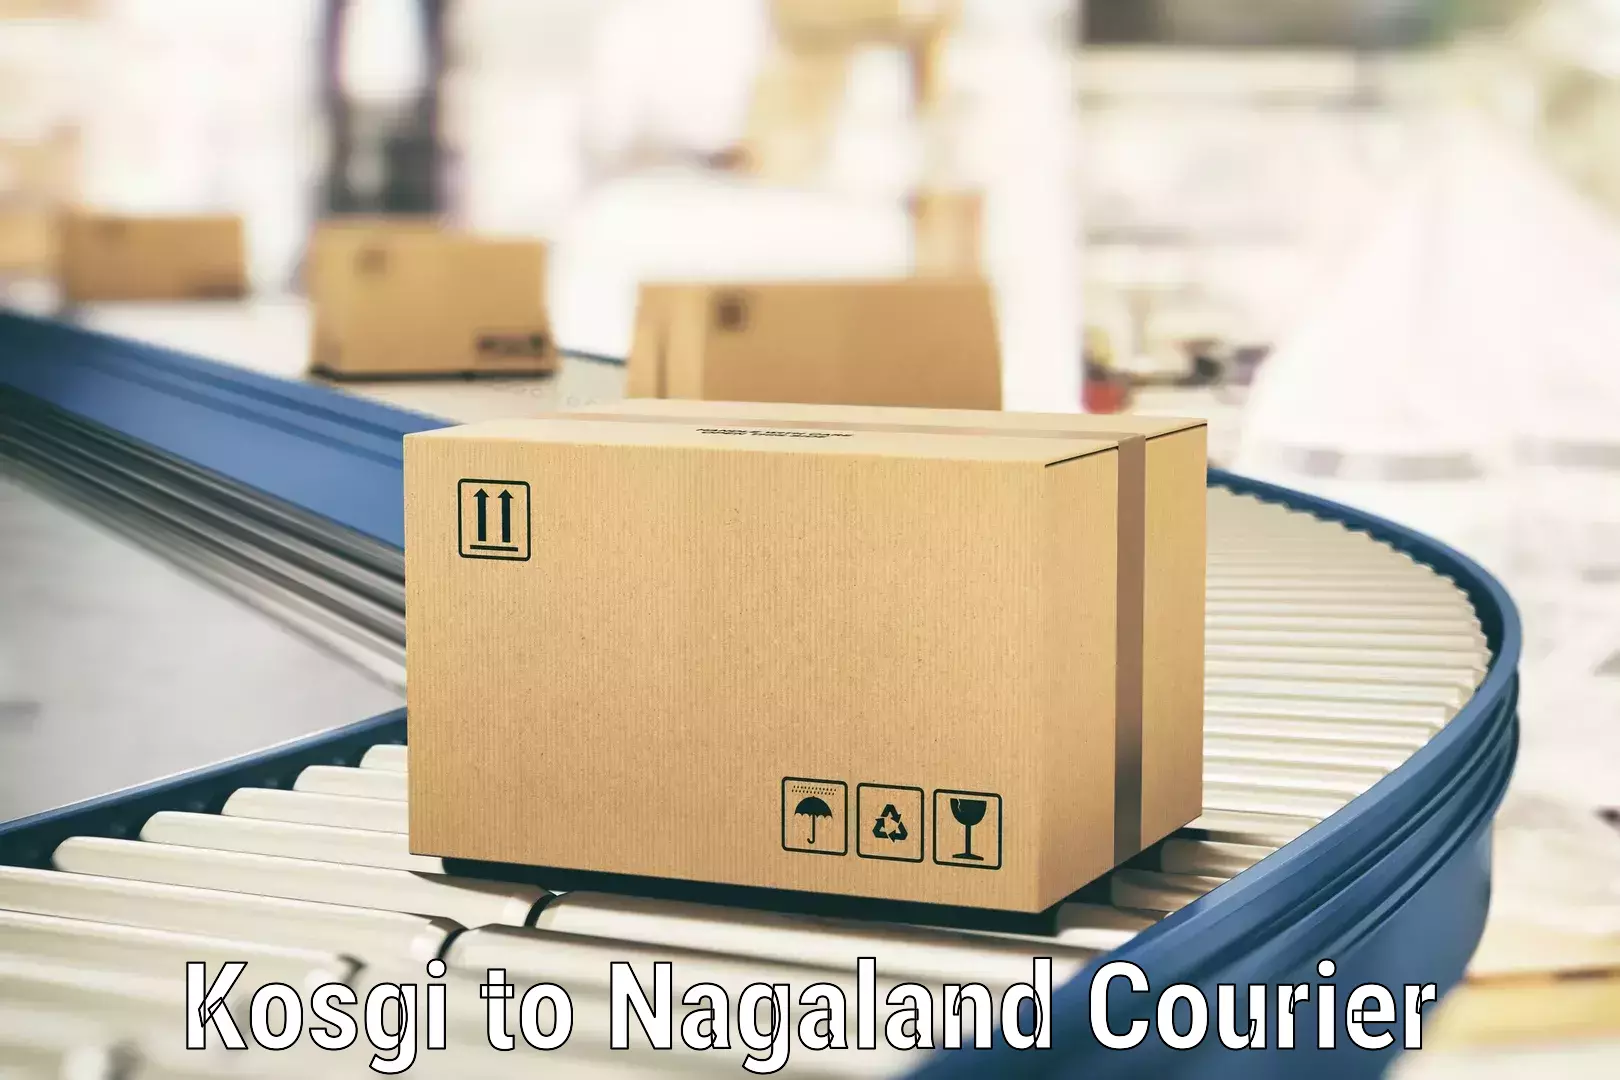 Smart parcel delivery Kosgi to Nagaland